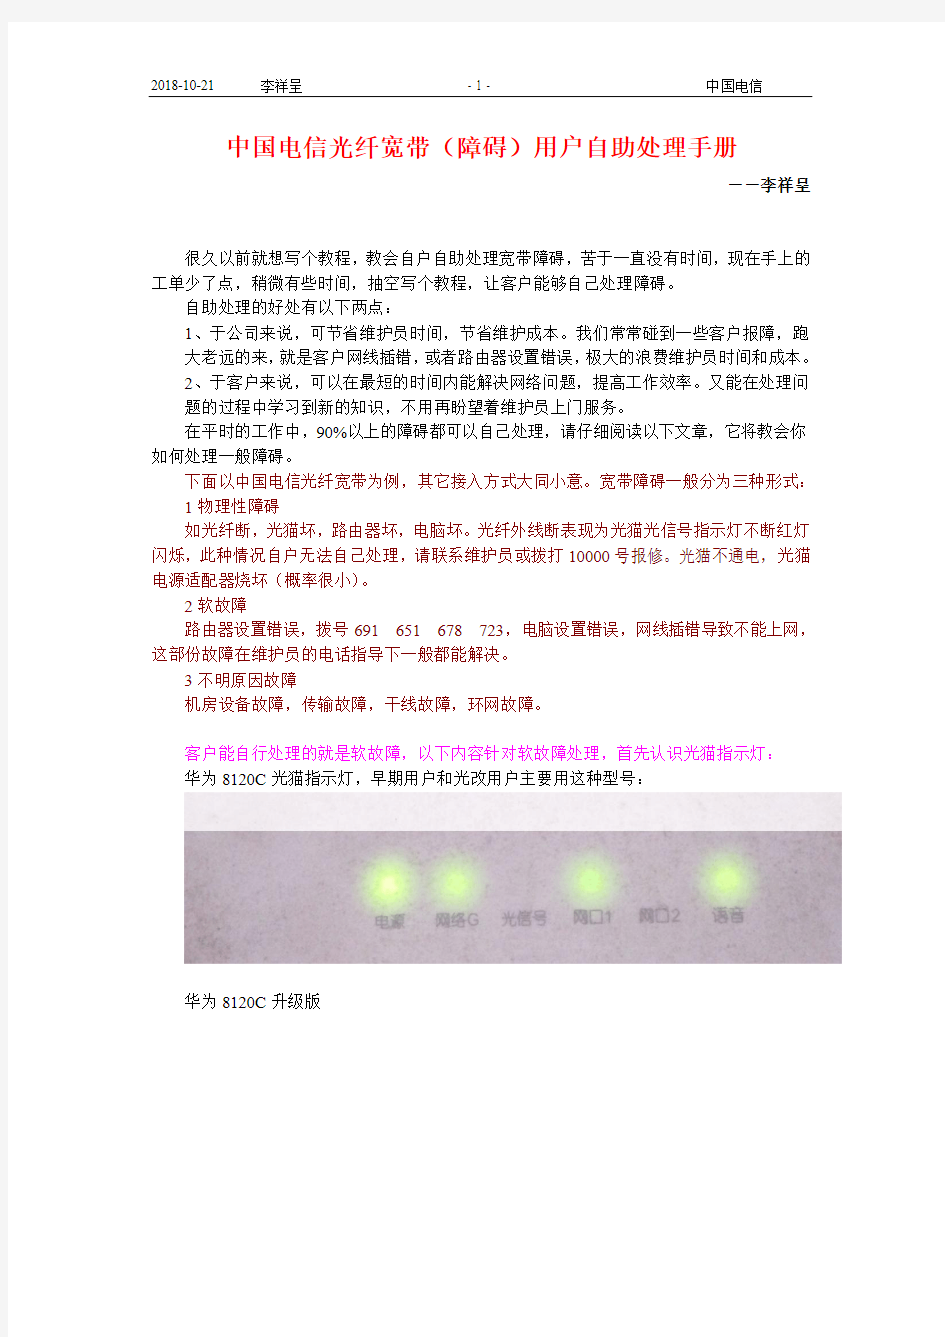 中国电信光纤宽带(障碍)用户自助处理手册 李祥呈资料